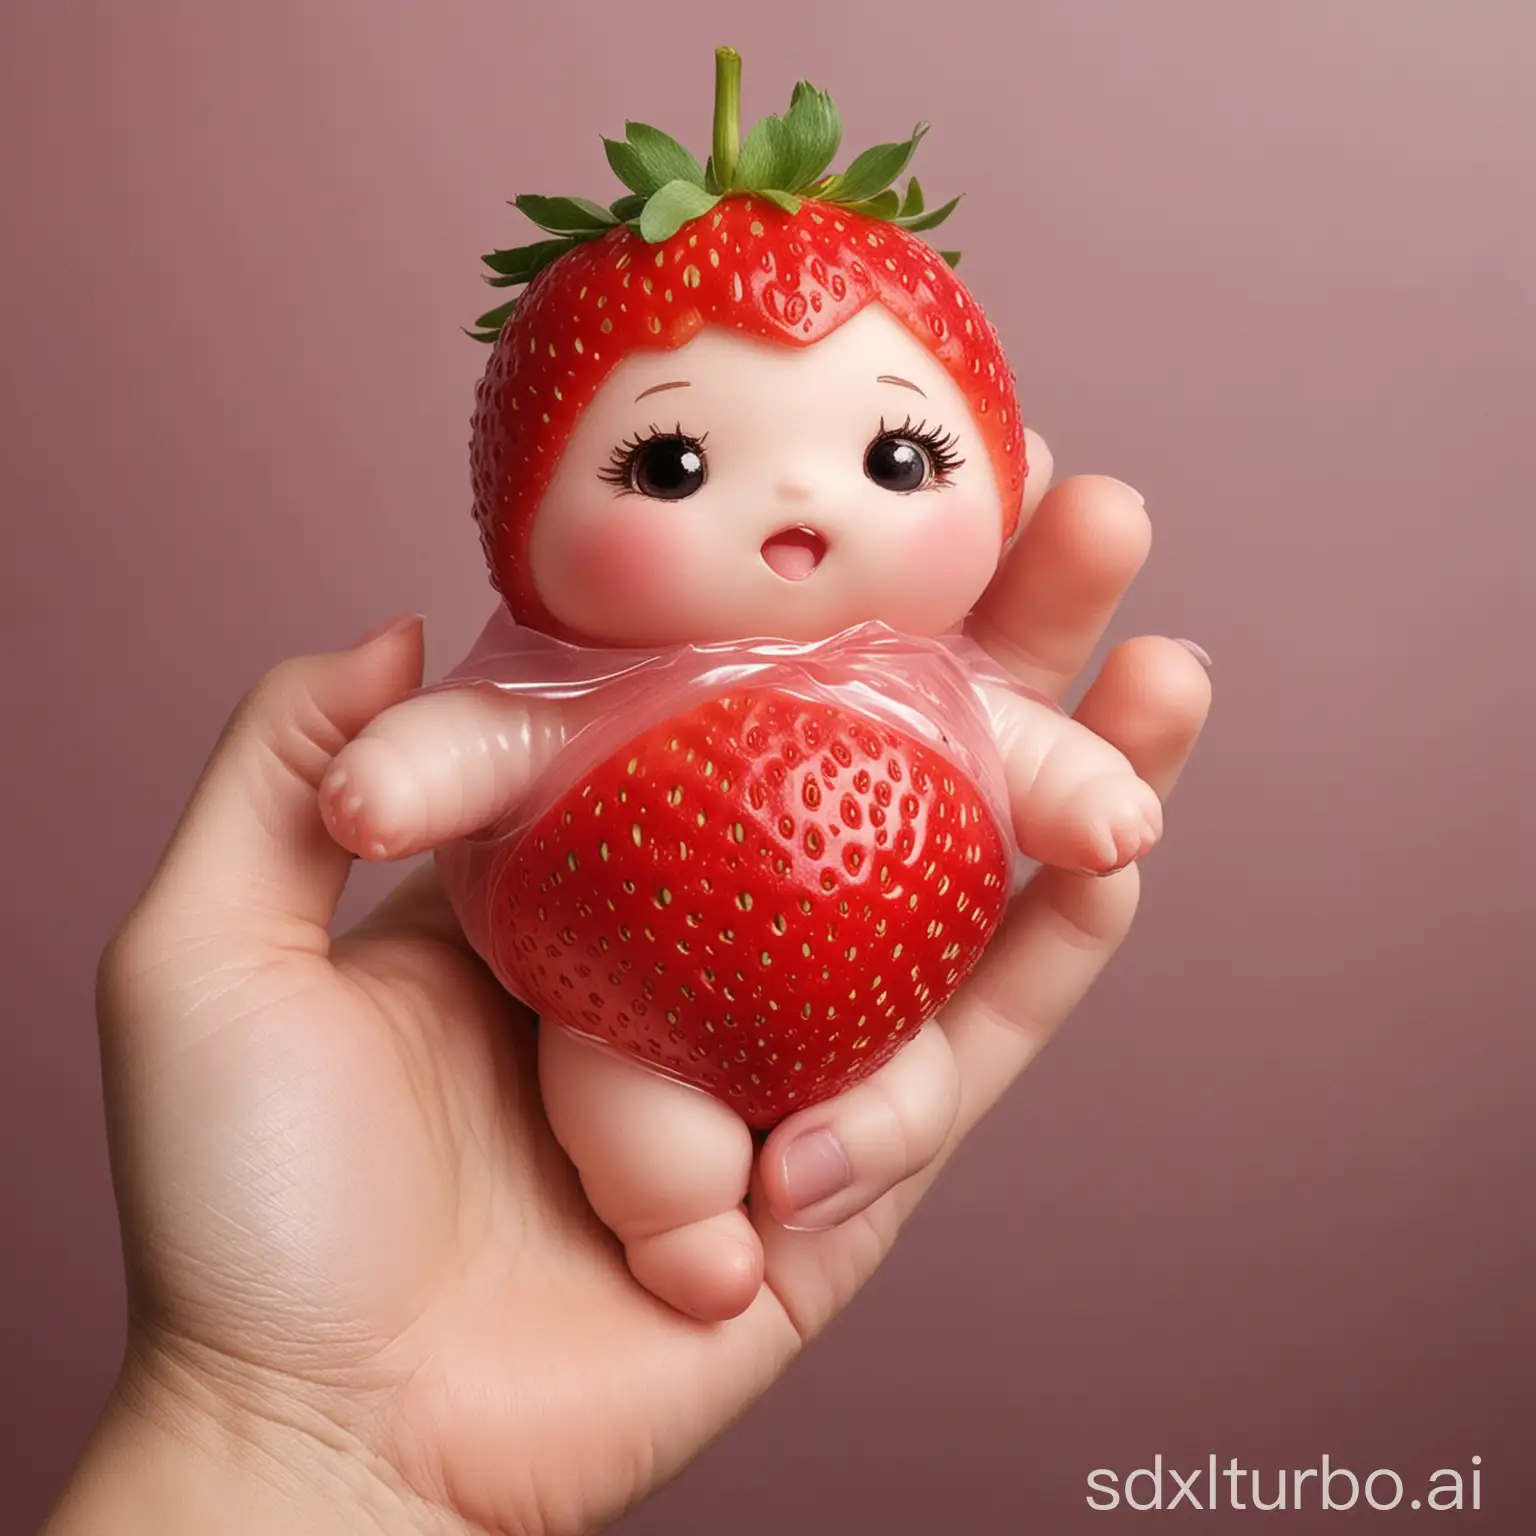 草莓型萌娃，她的外形是草莓，身子被一个完整草莓包裹